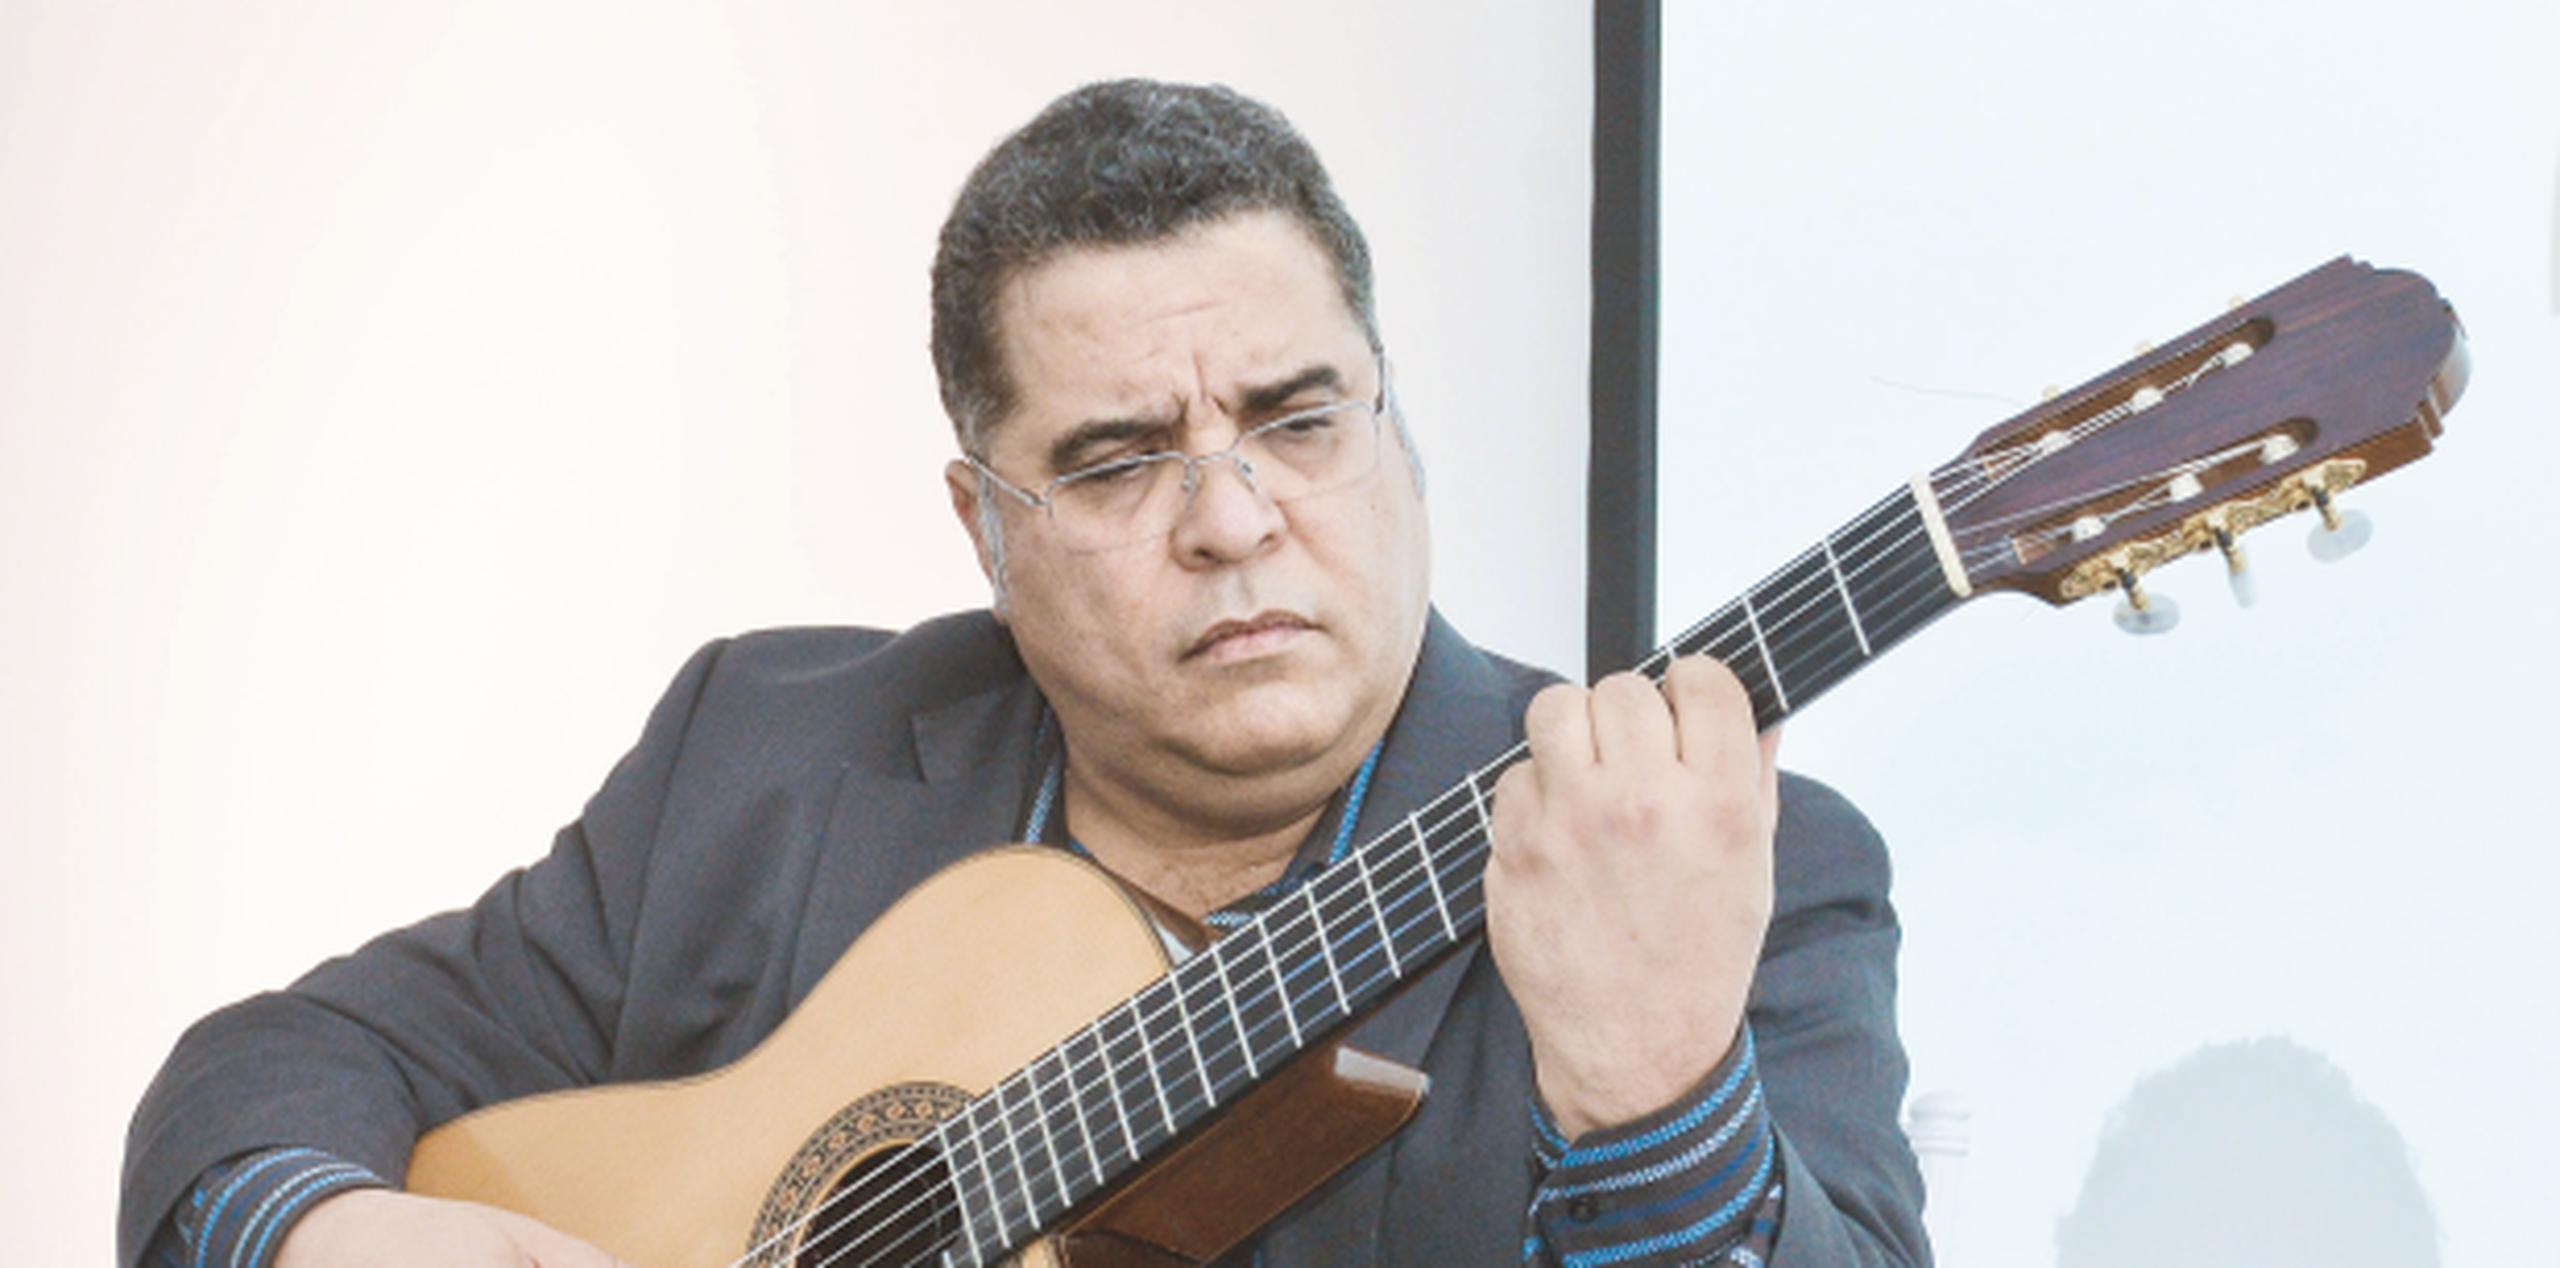 El Municipio Autónomo de San Juan recibe al guitarrista puertorriqueño, Iván Rijos, en Condado en Concierto. (Archivo)